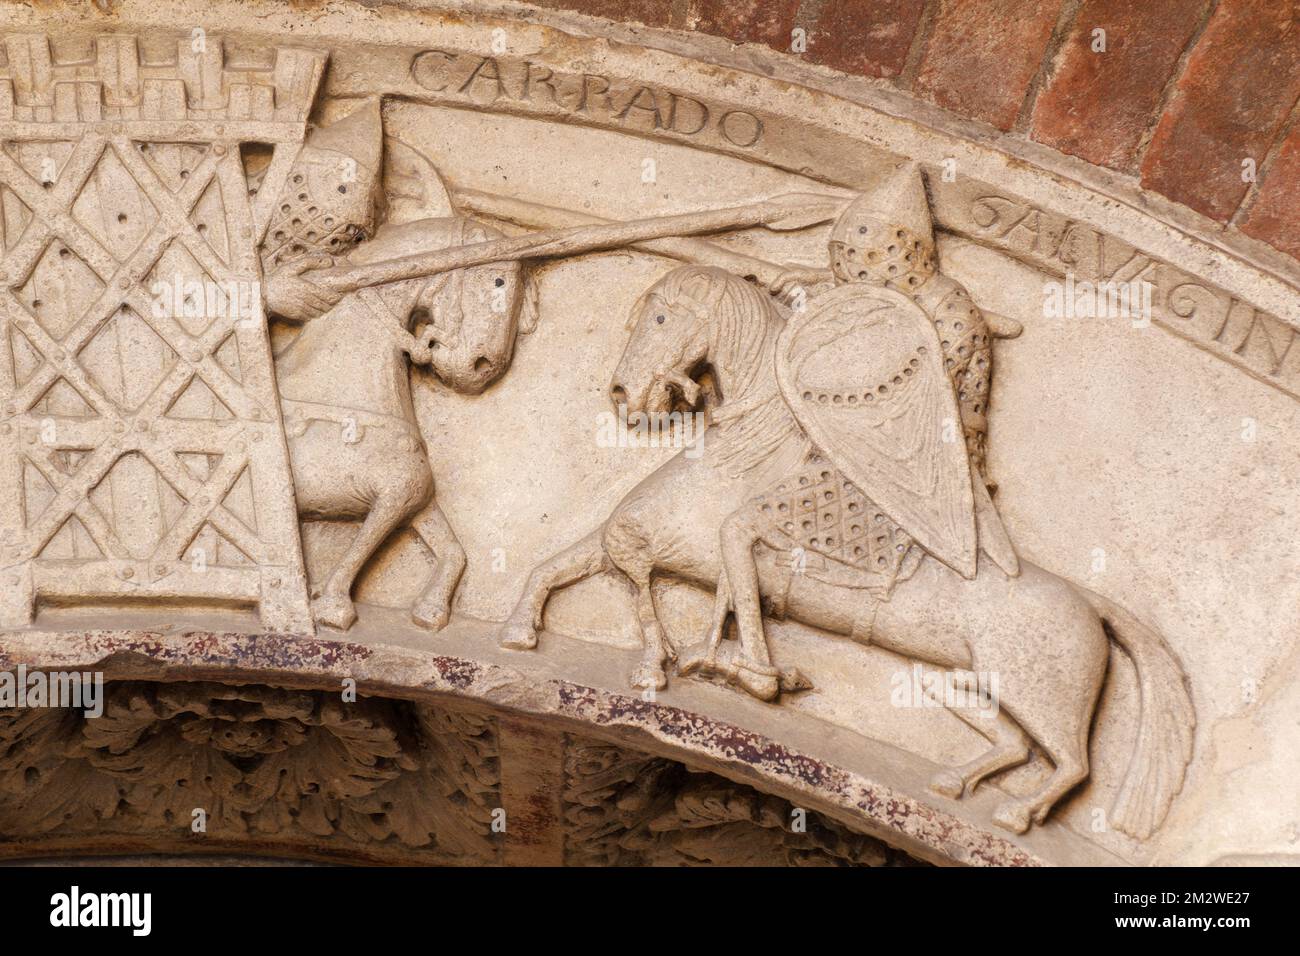 Porta della Pescheria (Duomo di Modena): Gawain combatte con i Carados della Torre dolorosa dall'abduzione di Guinevere (antica leggenda arturiana) Foto Stock